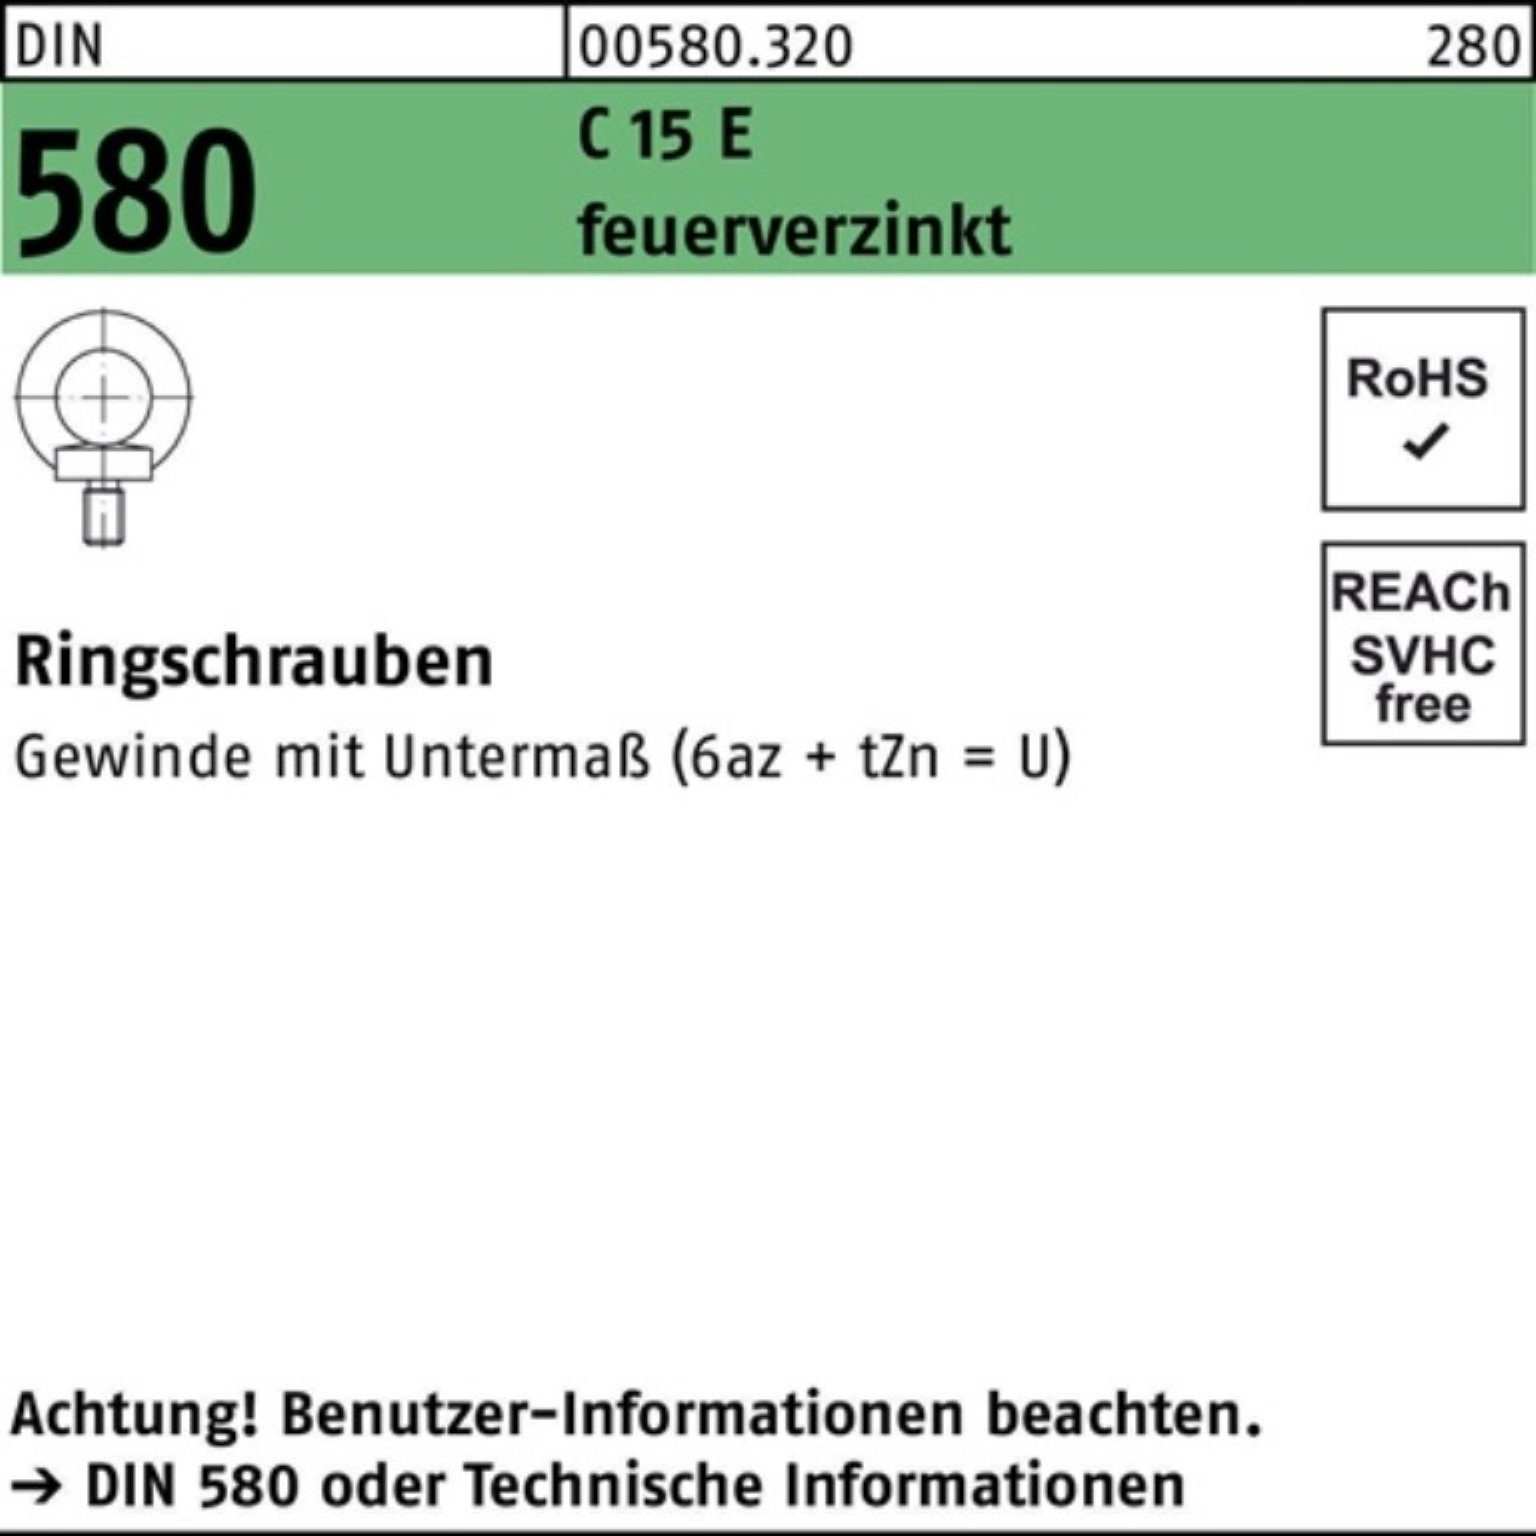 Reyher Schraube 100er Pack Ringschraube DIN 580 M8 C 15 E feuerverz. 25 Stück DIN 580